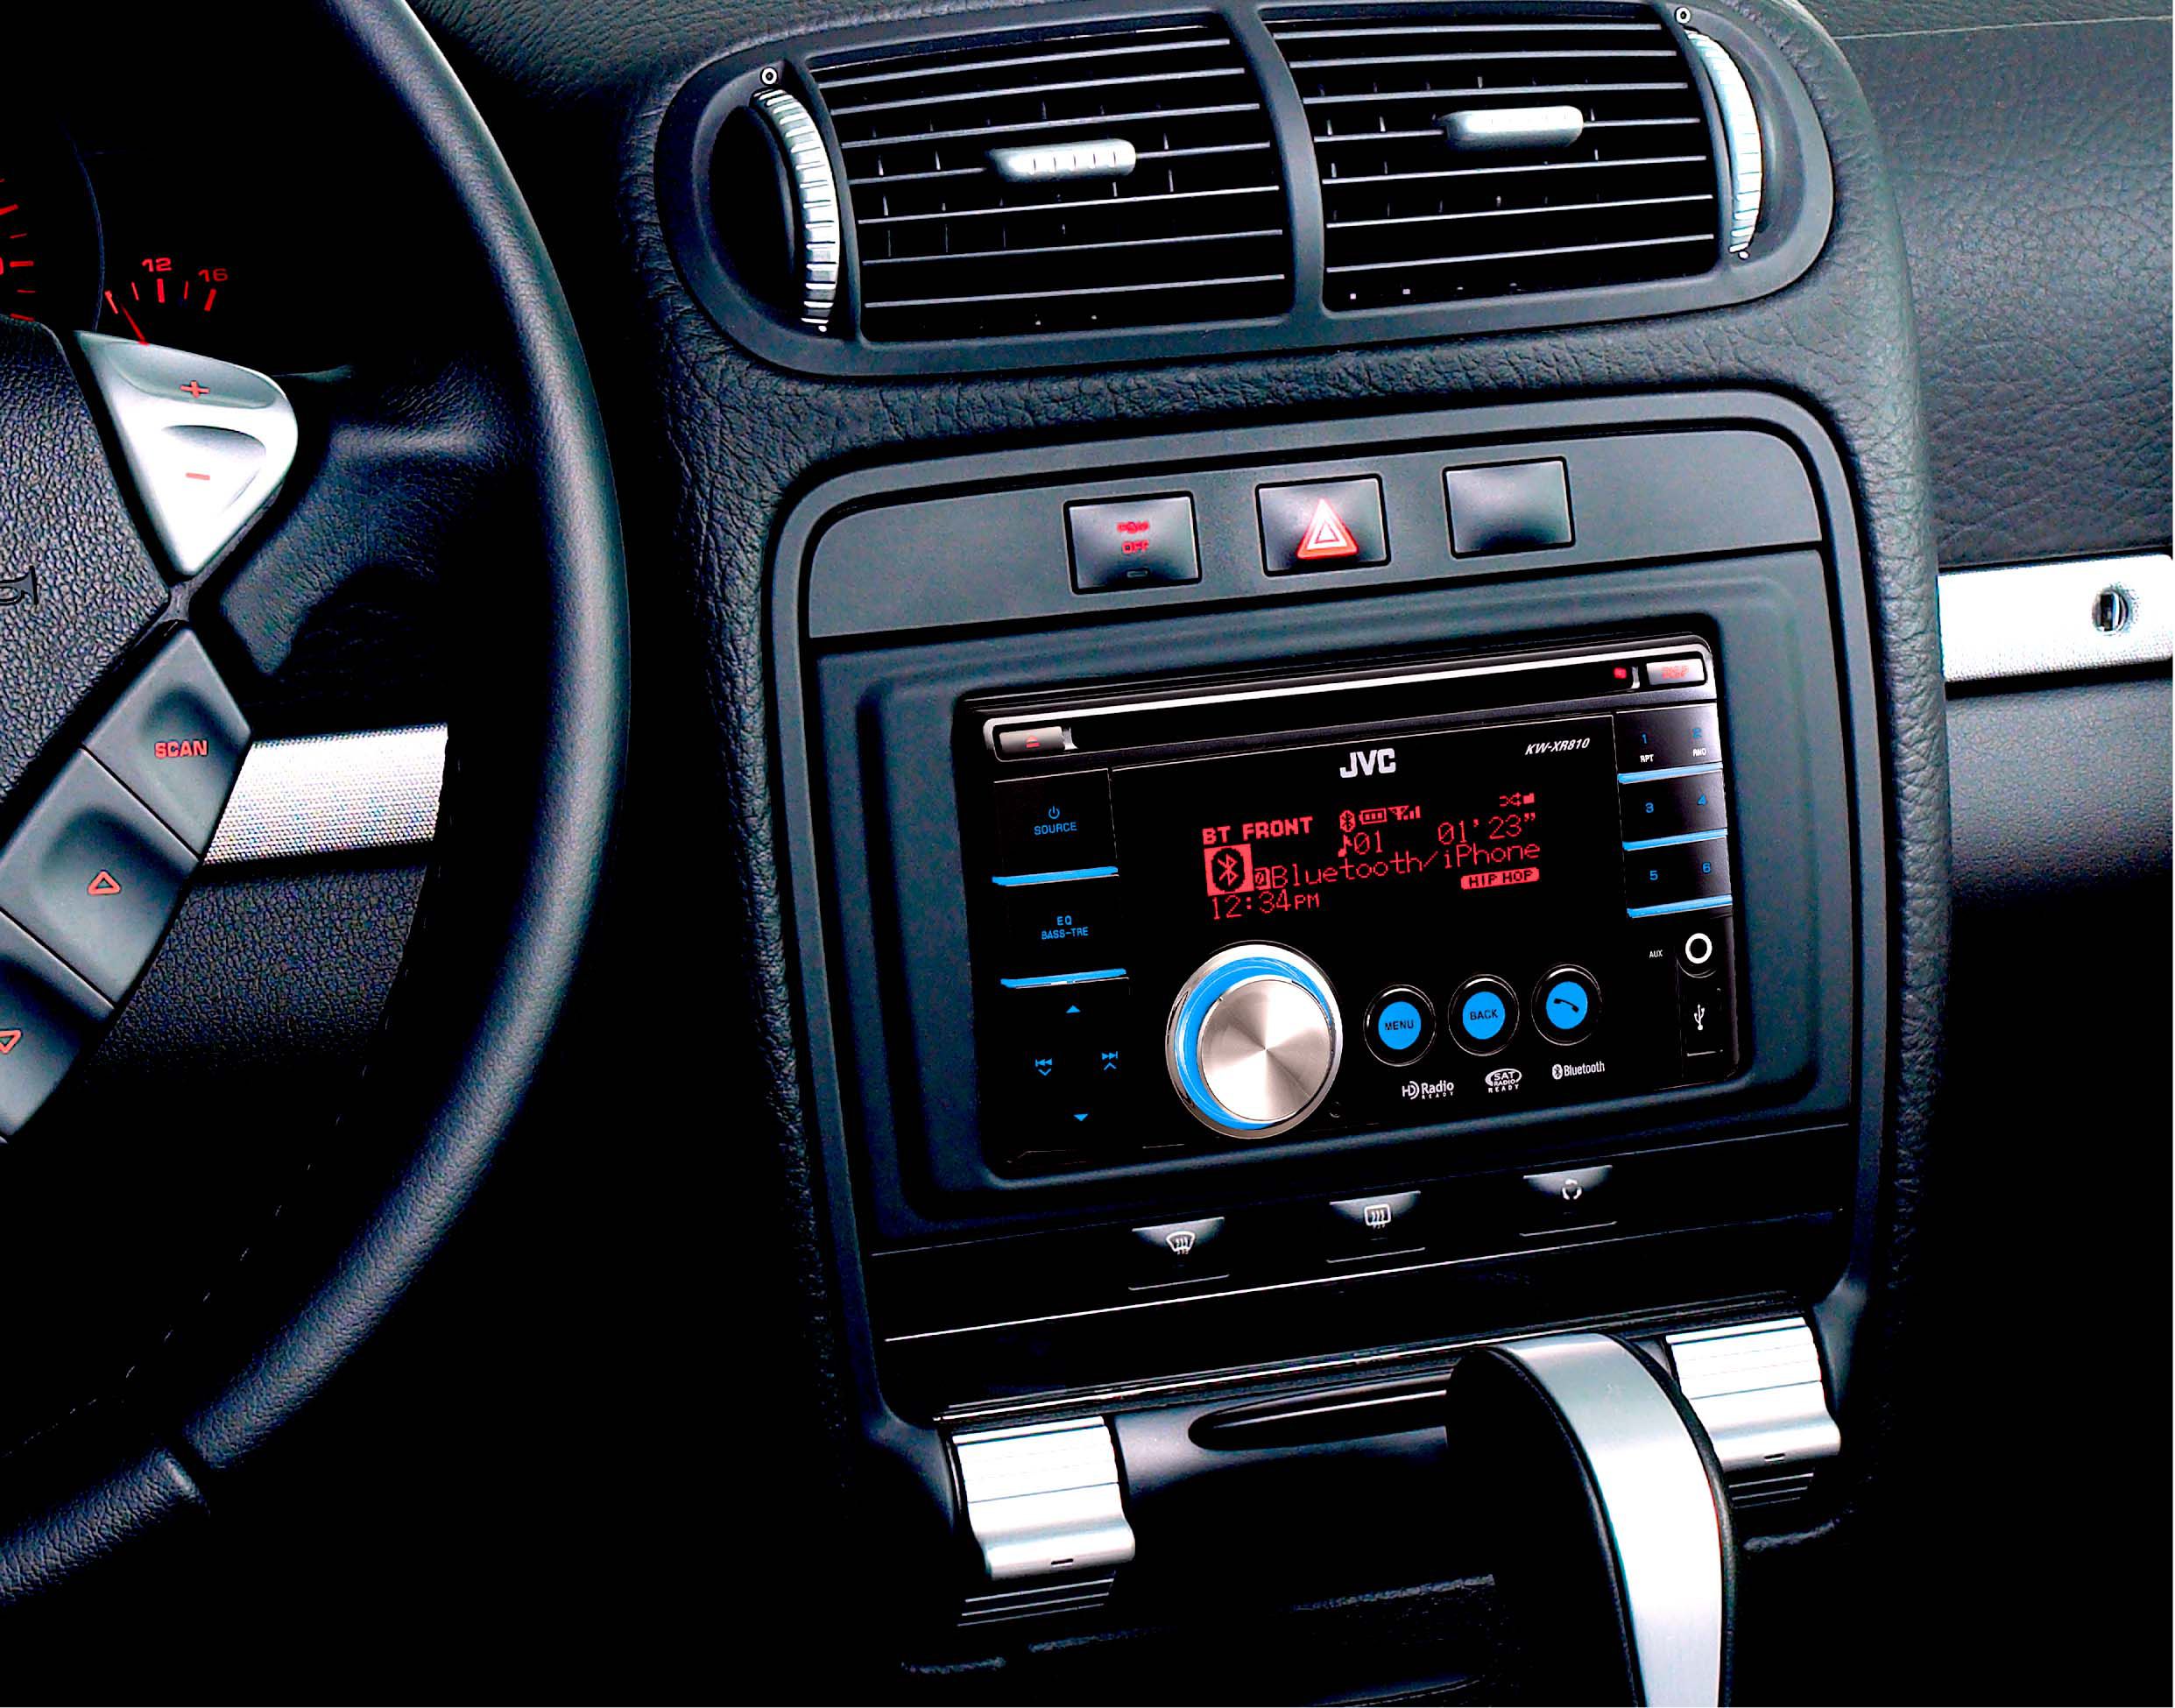 Аудио автомагнитолы. Магнитола car stereo. Магнитофон car Audio System. Car Audio Systems 7615 магнитола. 1 Din магнитола в машине.